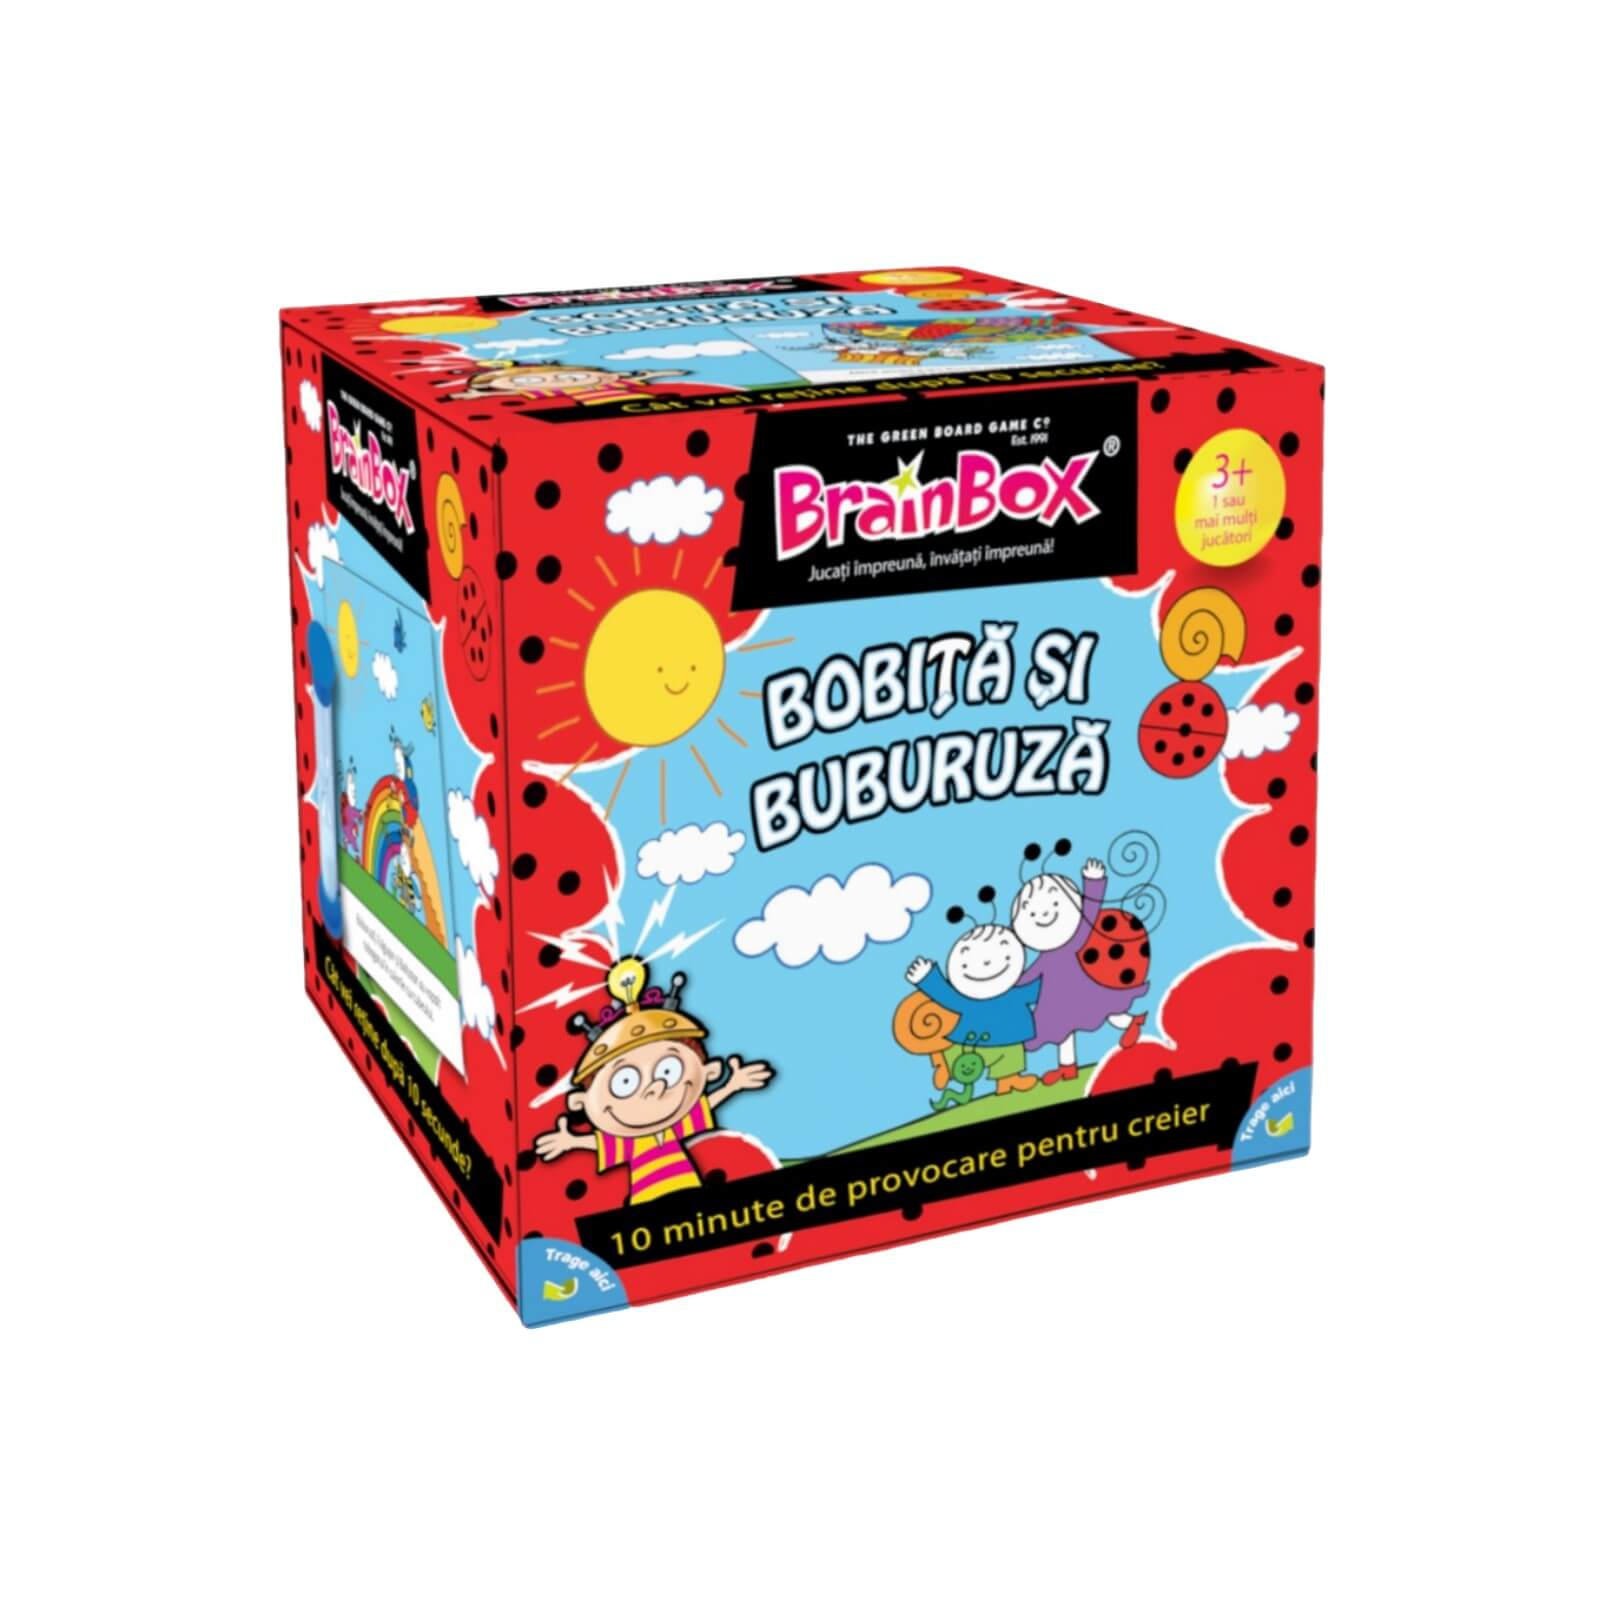 BrainBox si Buburuza - Joc pentru copii | Gameology